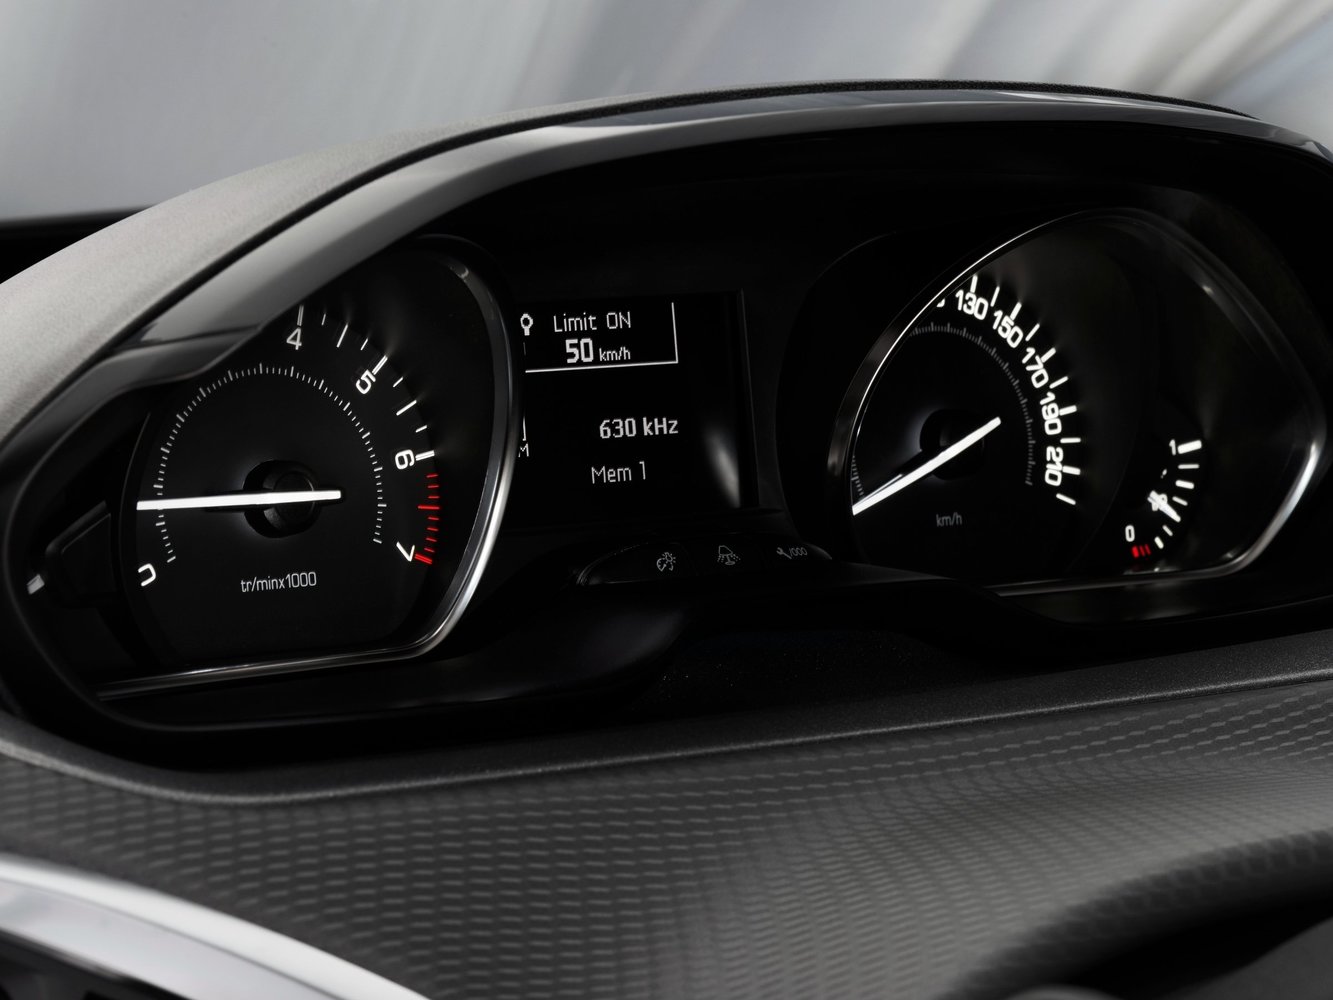 хэтчбек 3 дв. Peugeot 208 2015 - 2016г выпуска модификация 1.0 MT (68 л.с.)